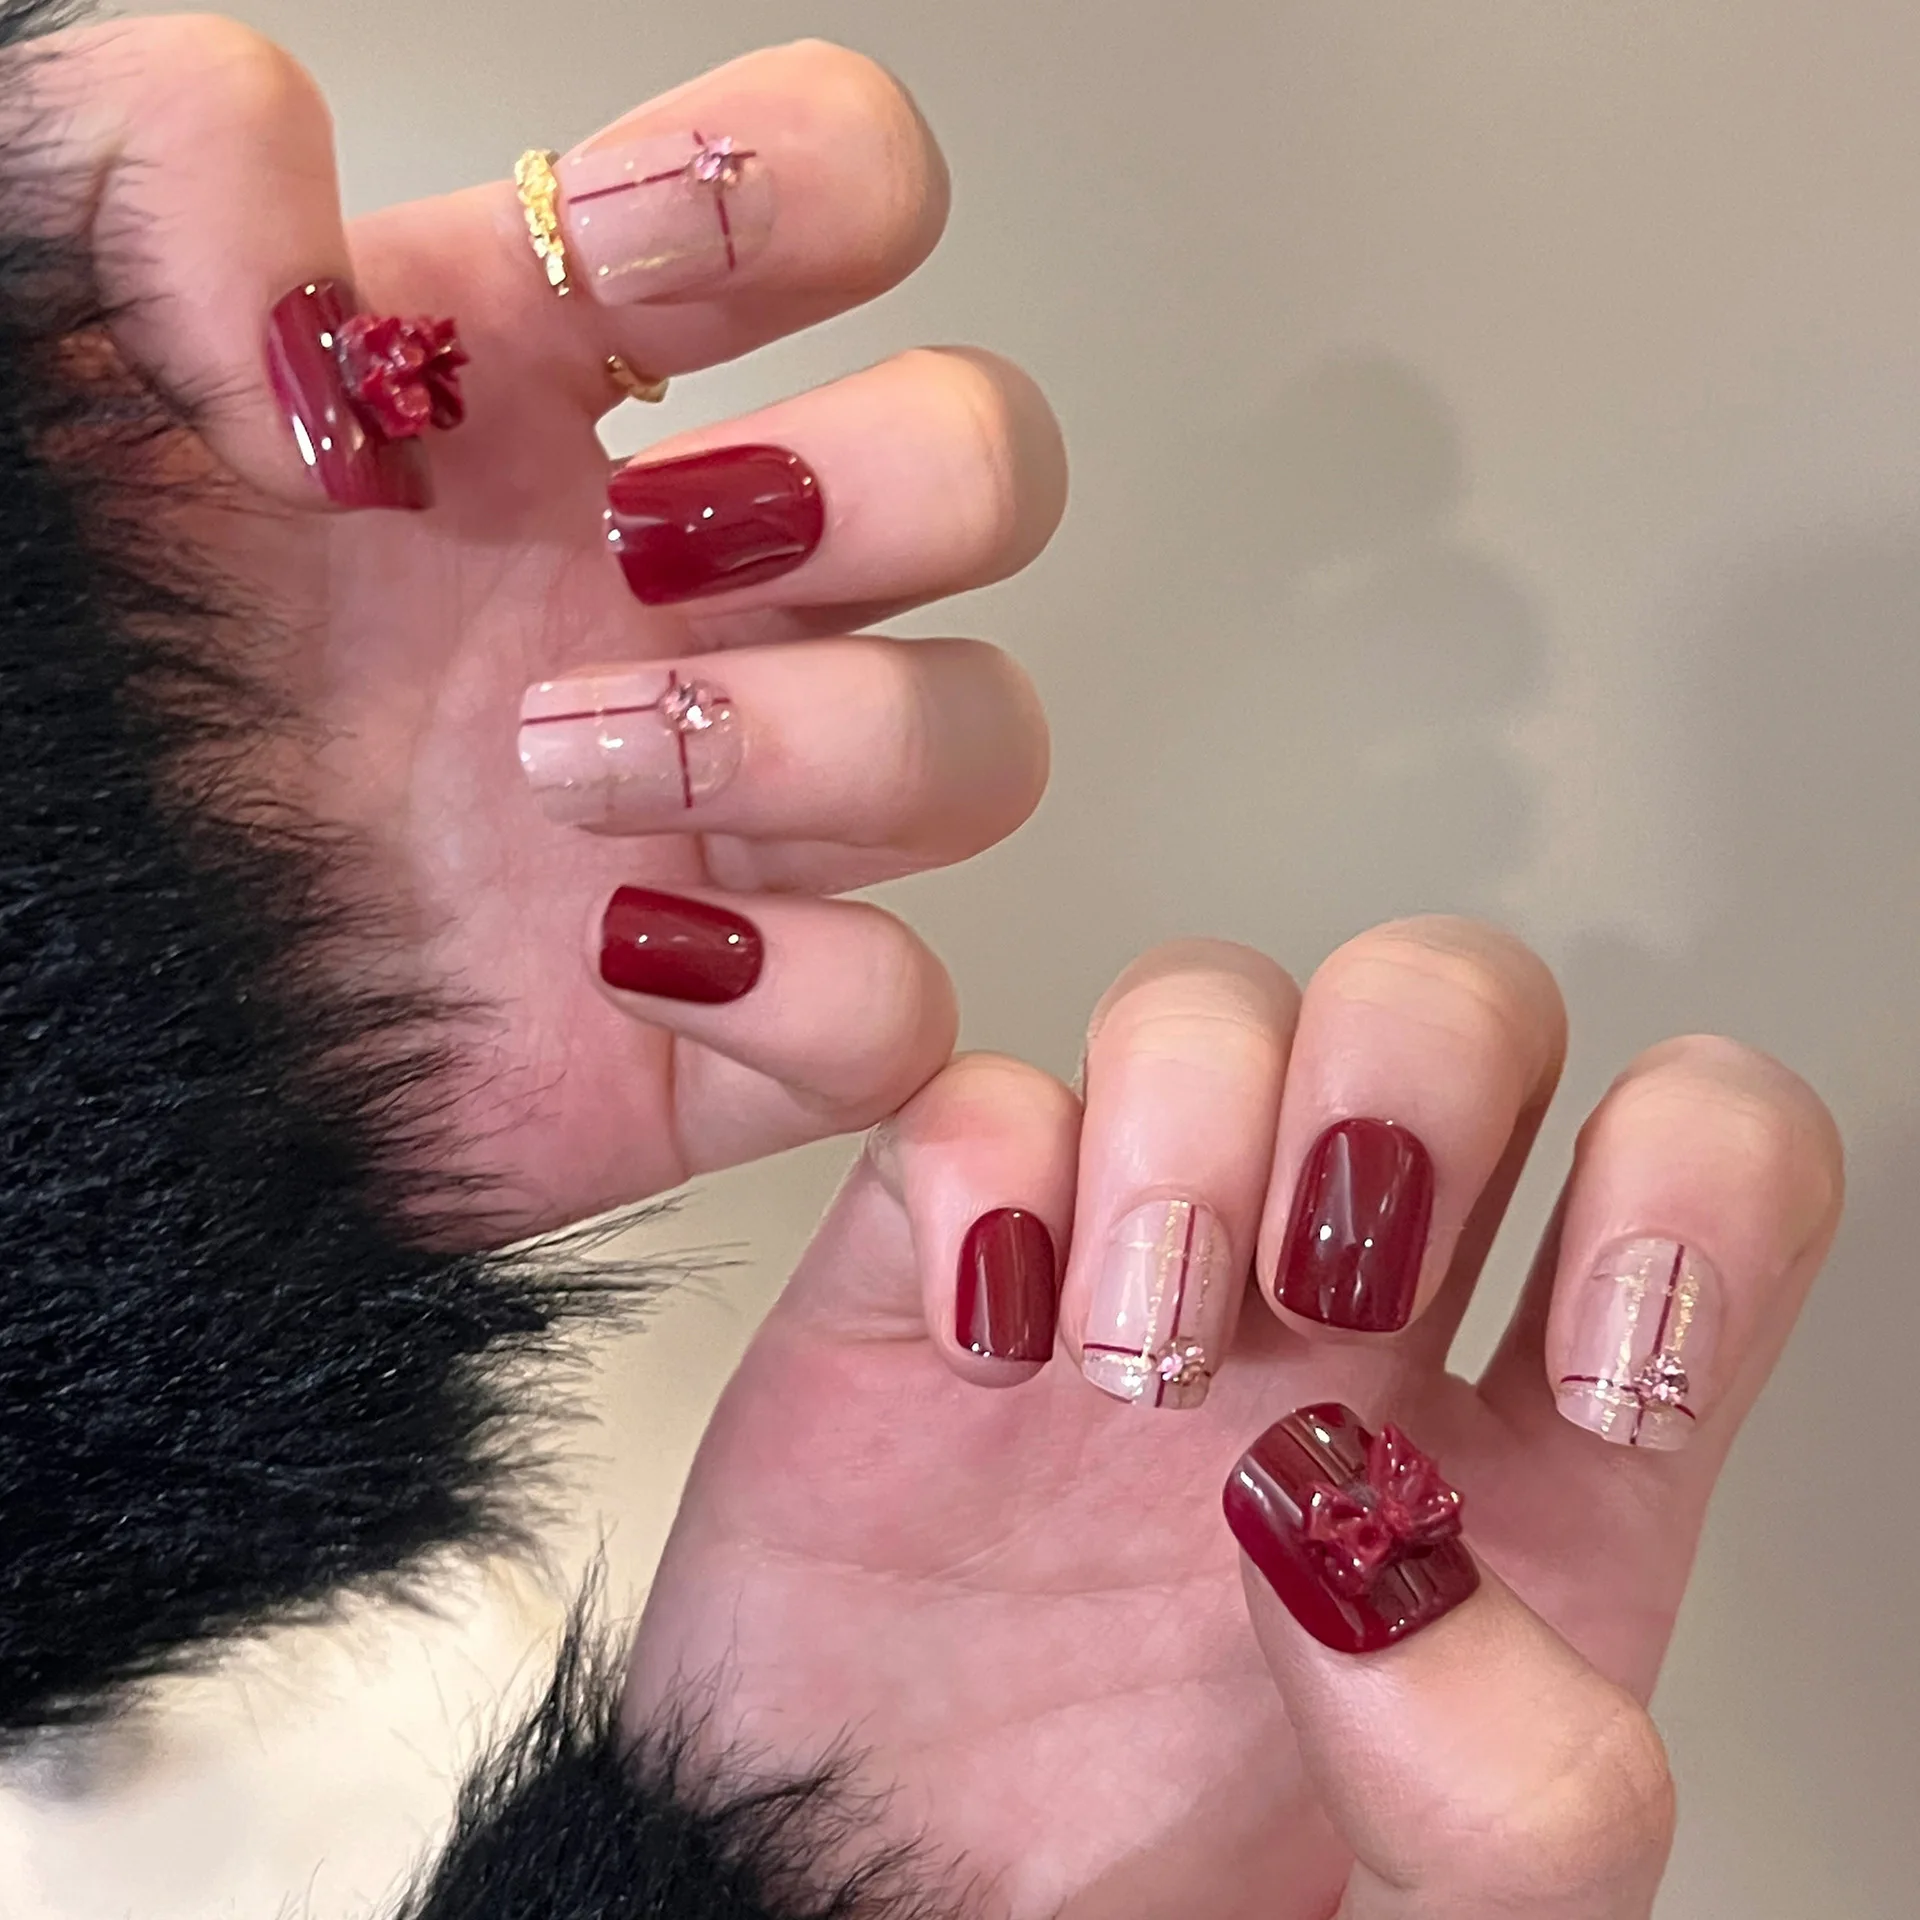 24шт Новогодних красных накладных ногтей с бантиком в цветочном дизайне, накладные ногти для девочек, модные Короткие накладки на ногти